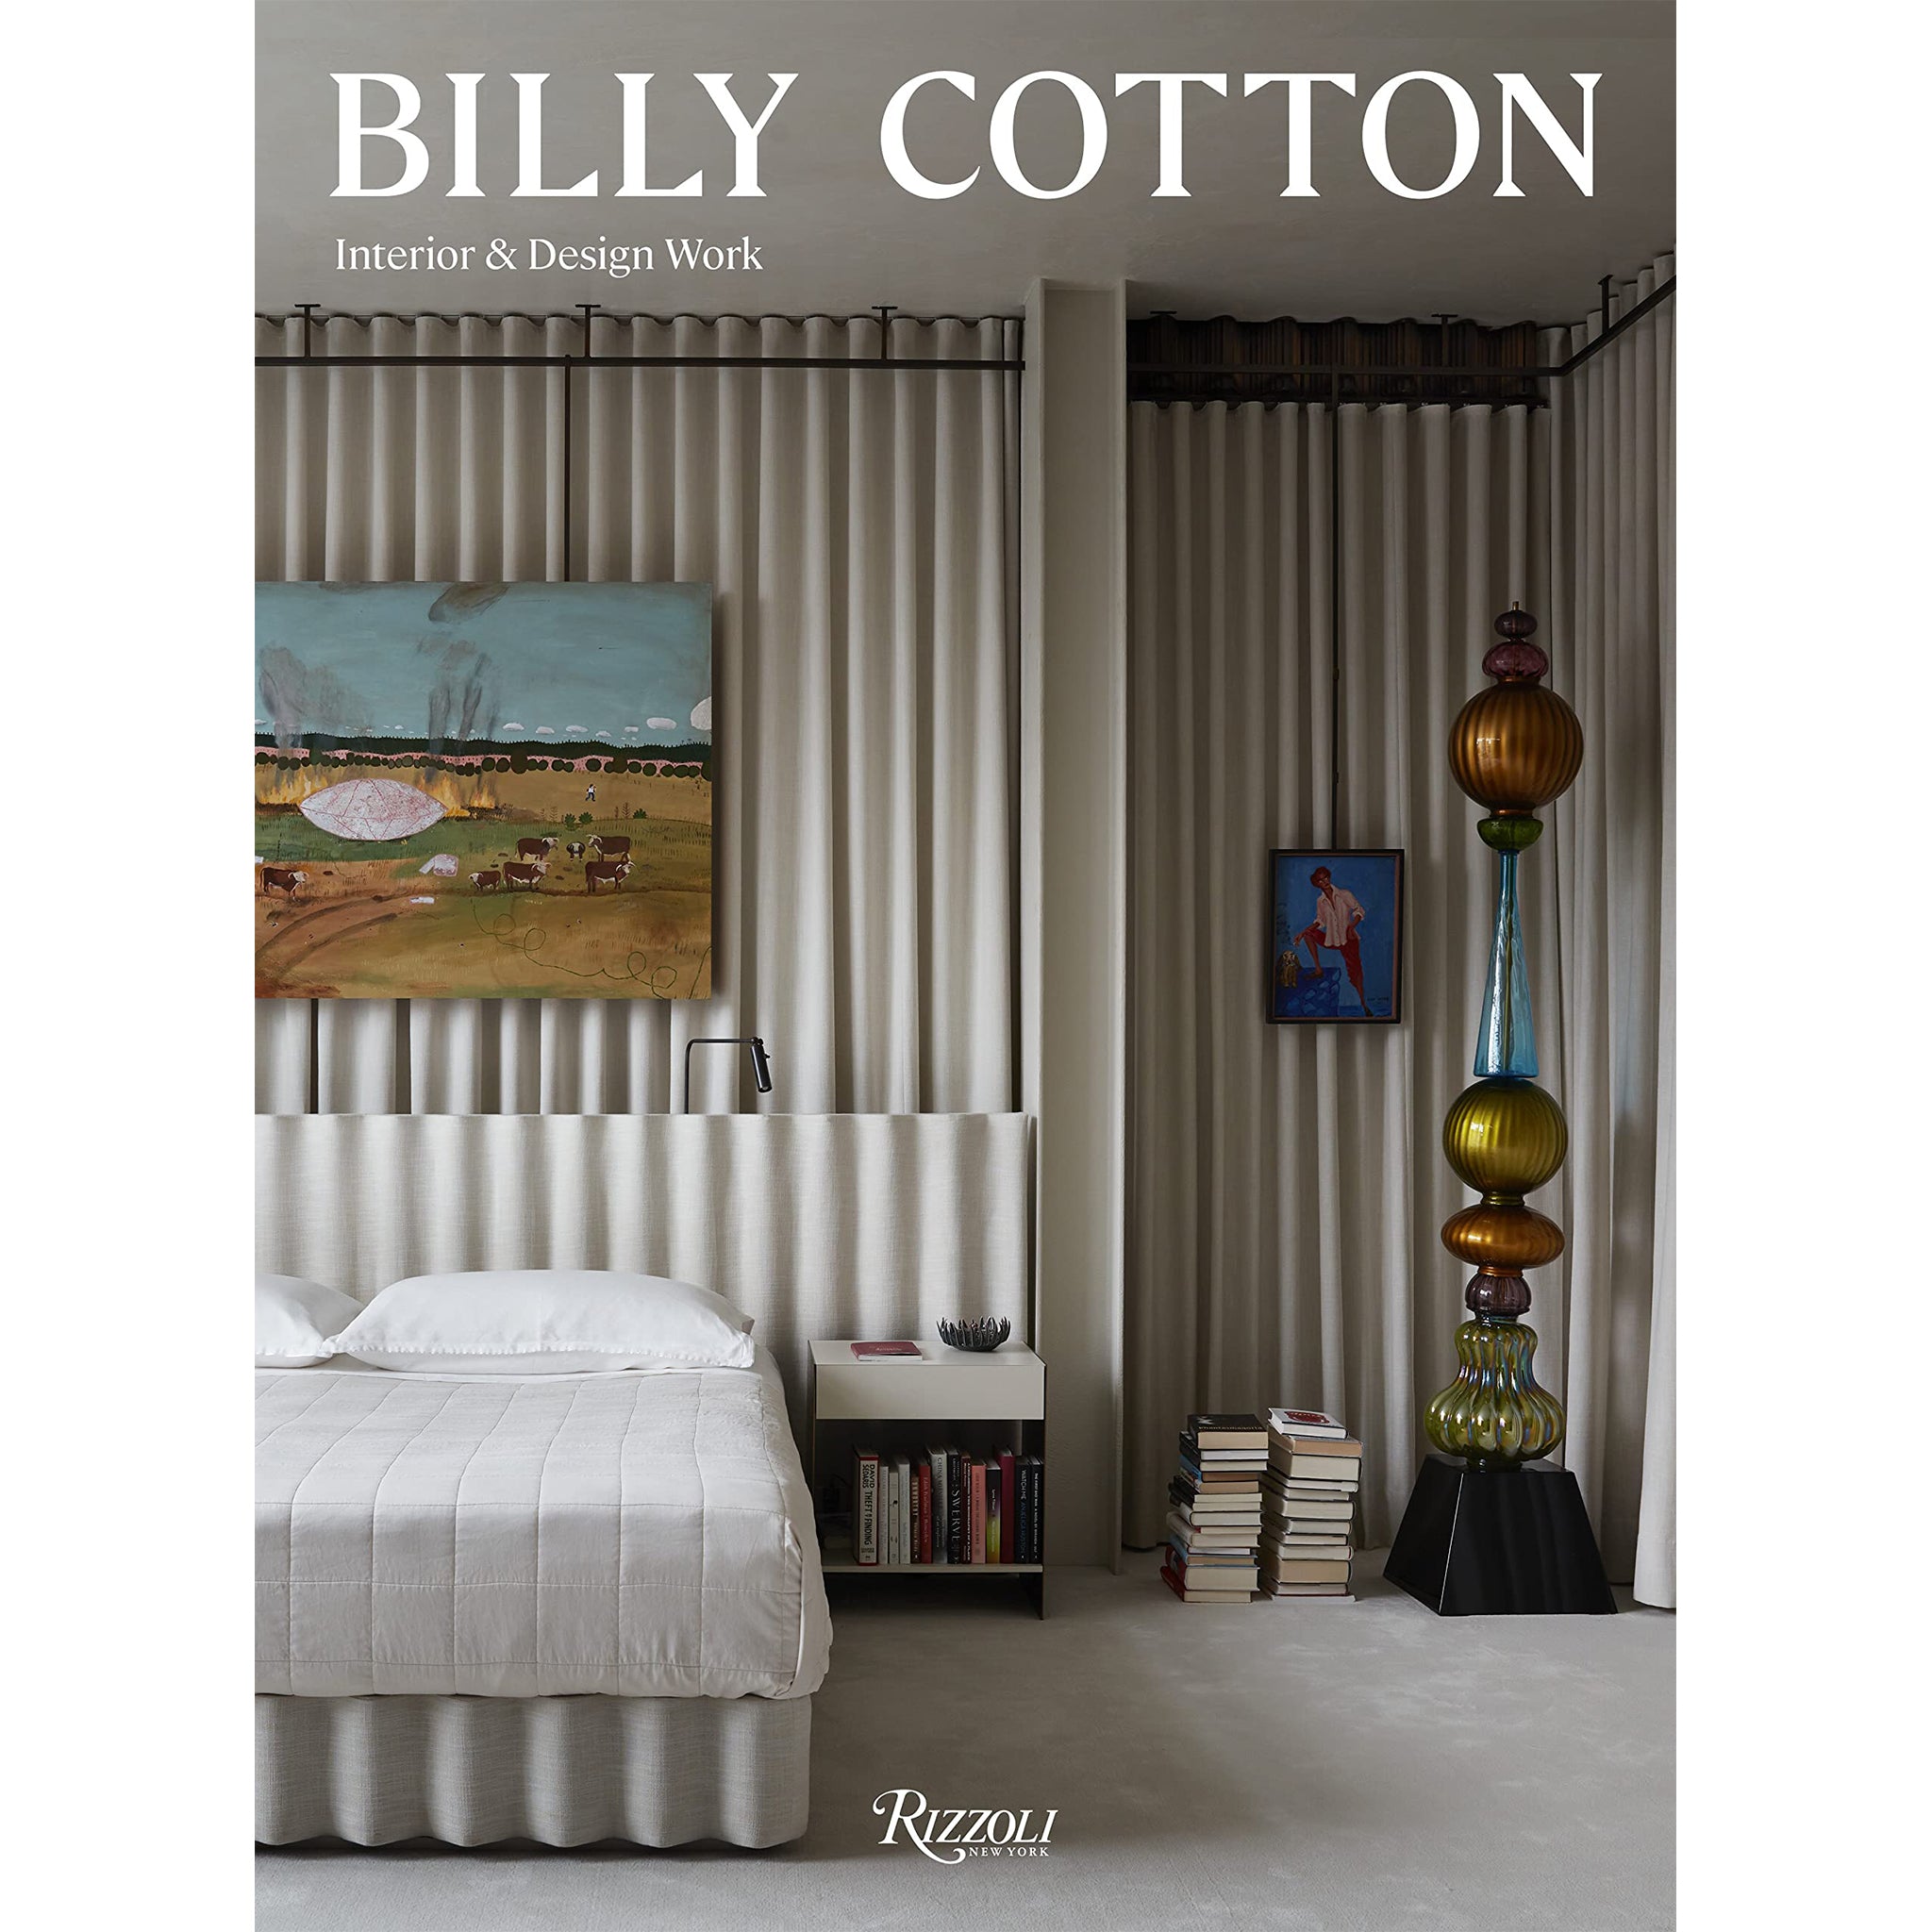 Billy Cotton: Interior and Design Work